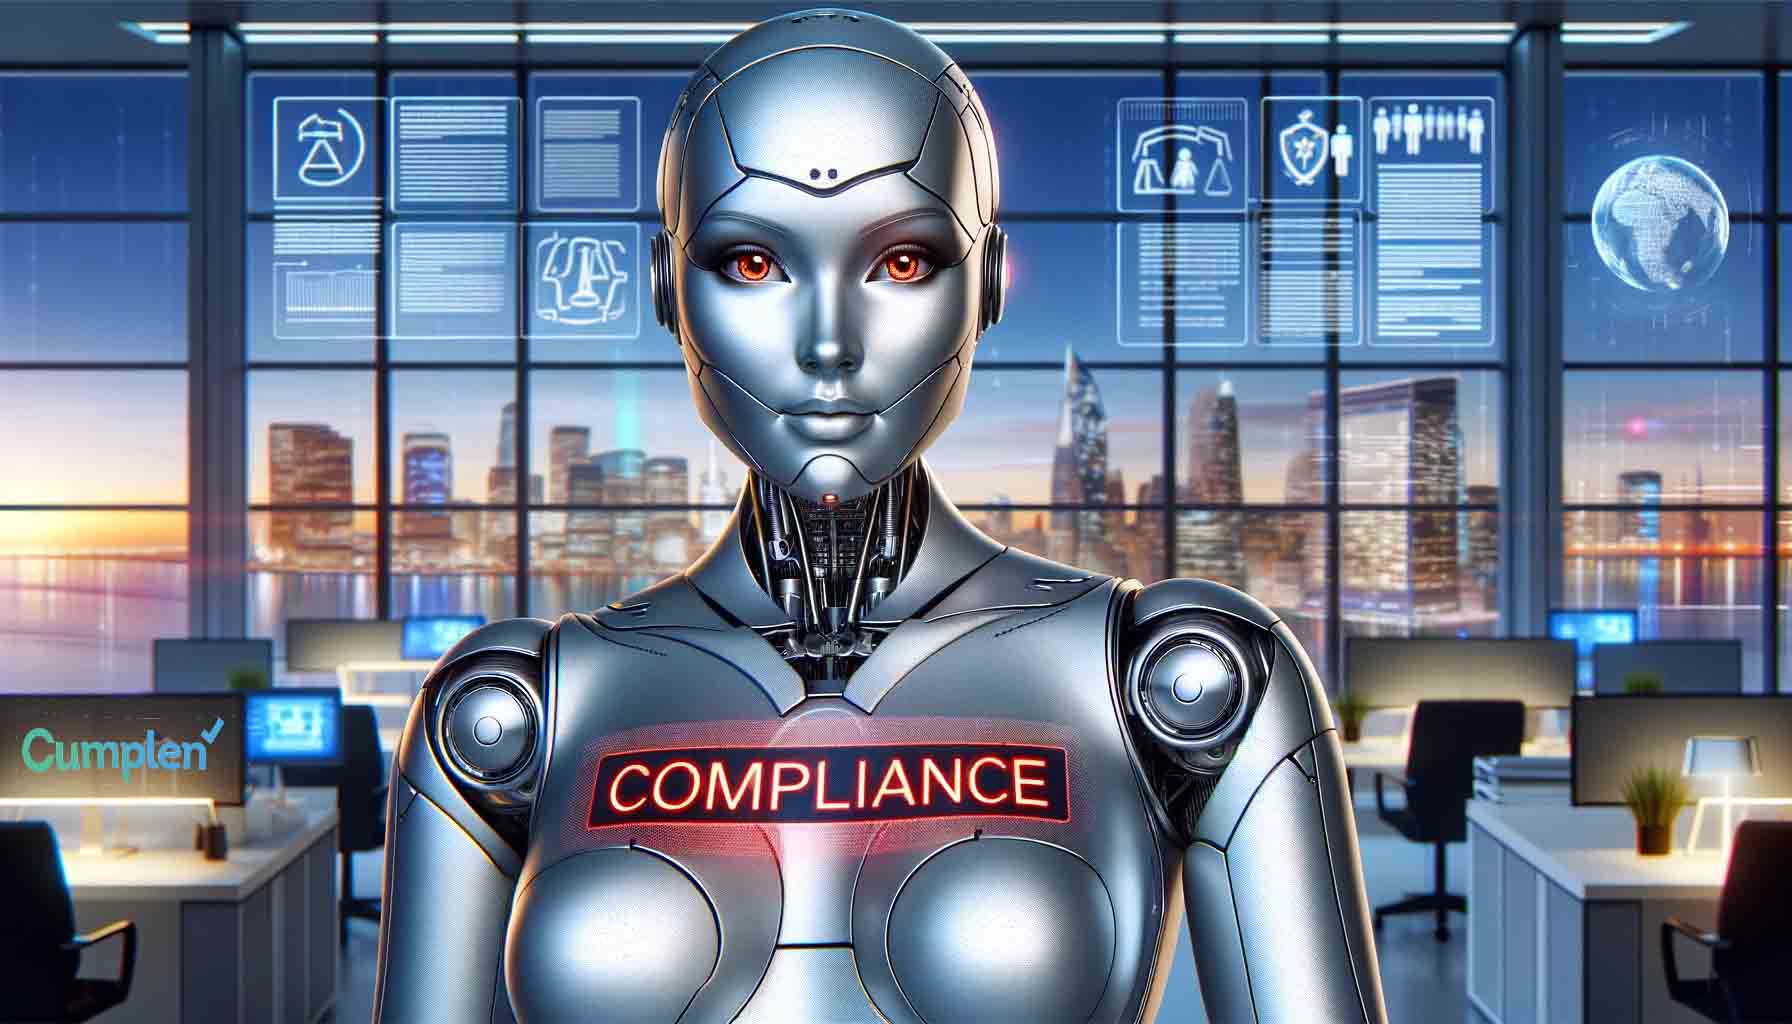 La Inteligencia Artificial es una cuestión que también afecta al cumplimiento normativo empresarial, según Cumplen